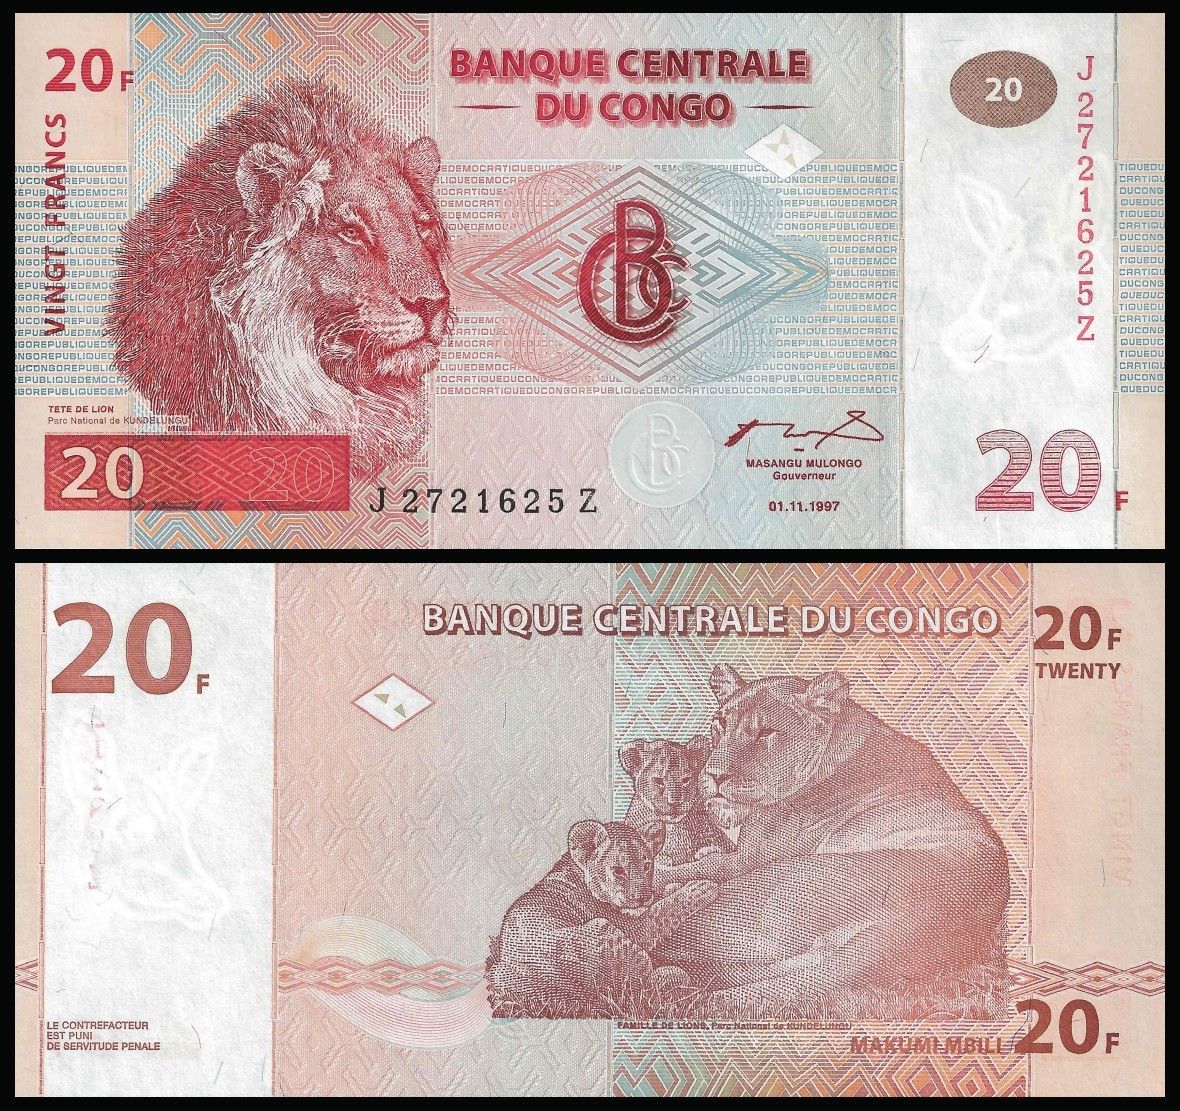 20 francs Congo Democratic Republic 1997